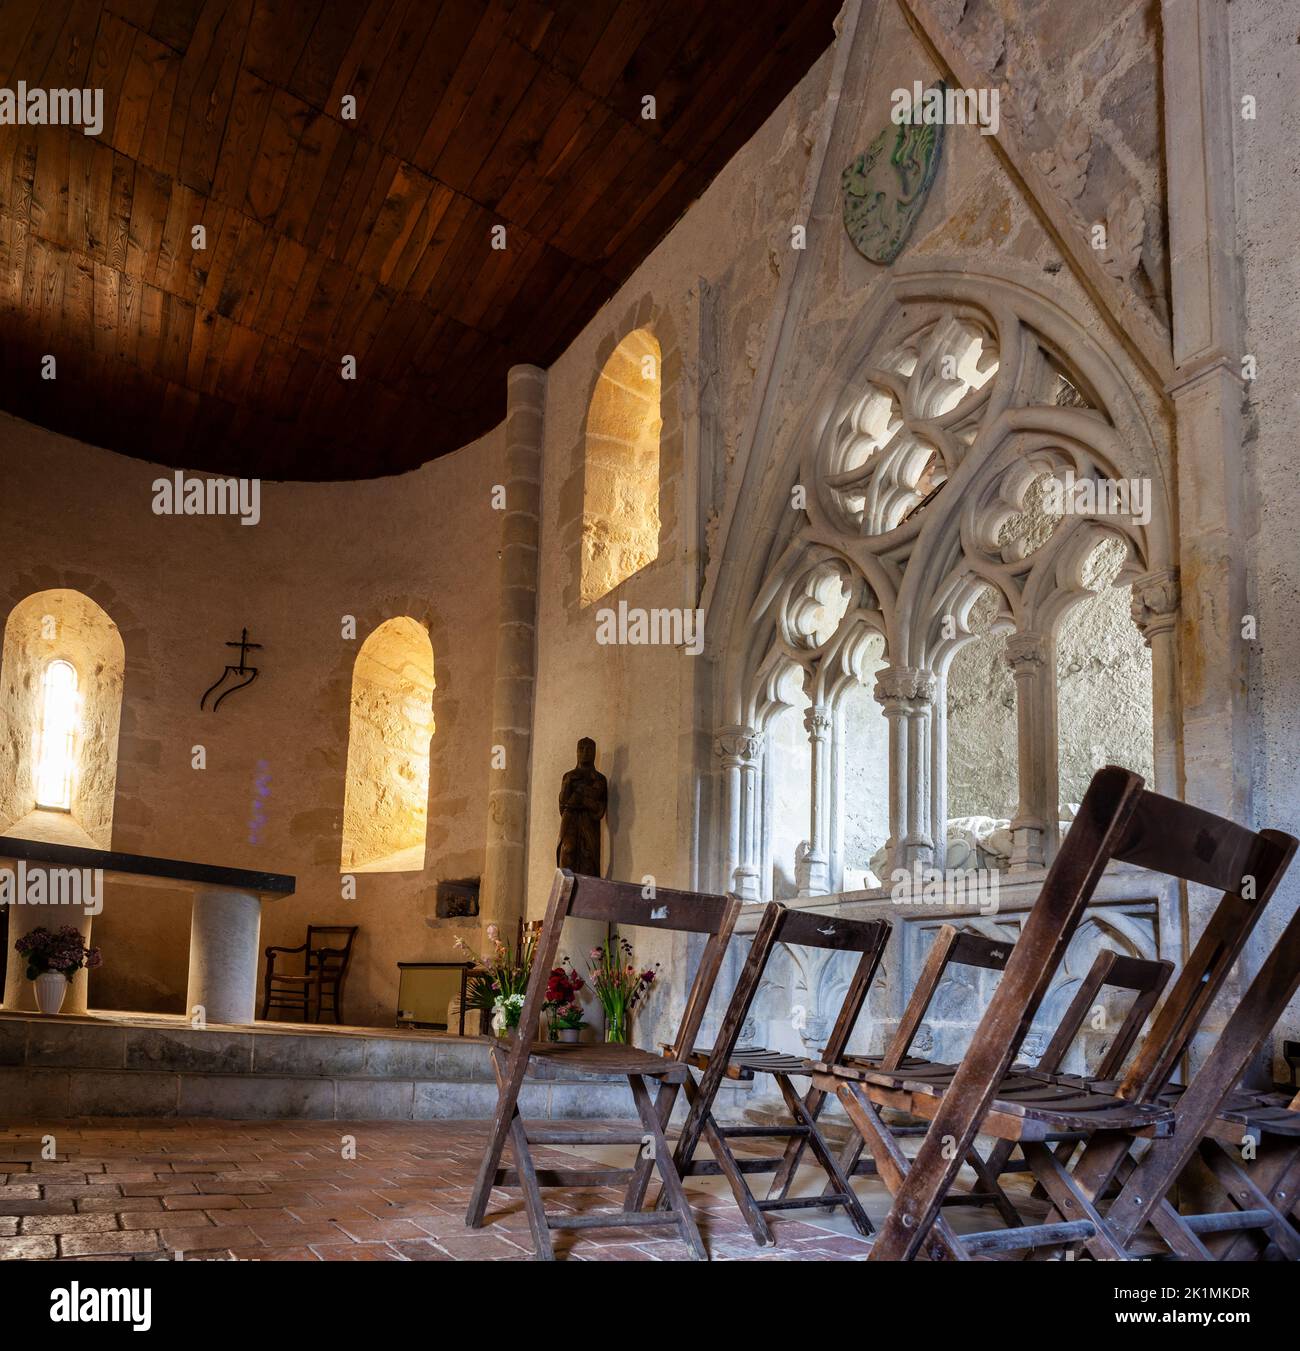 Innenraum der Kapelle von Caubin entlang der Route von Chemin du Puy im Kanton Arthez-de-Béarn. In einer gotischen Krypta befindet sich das Bildnis eines Ritters Stockfoto